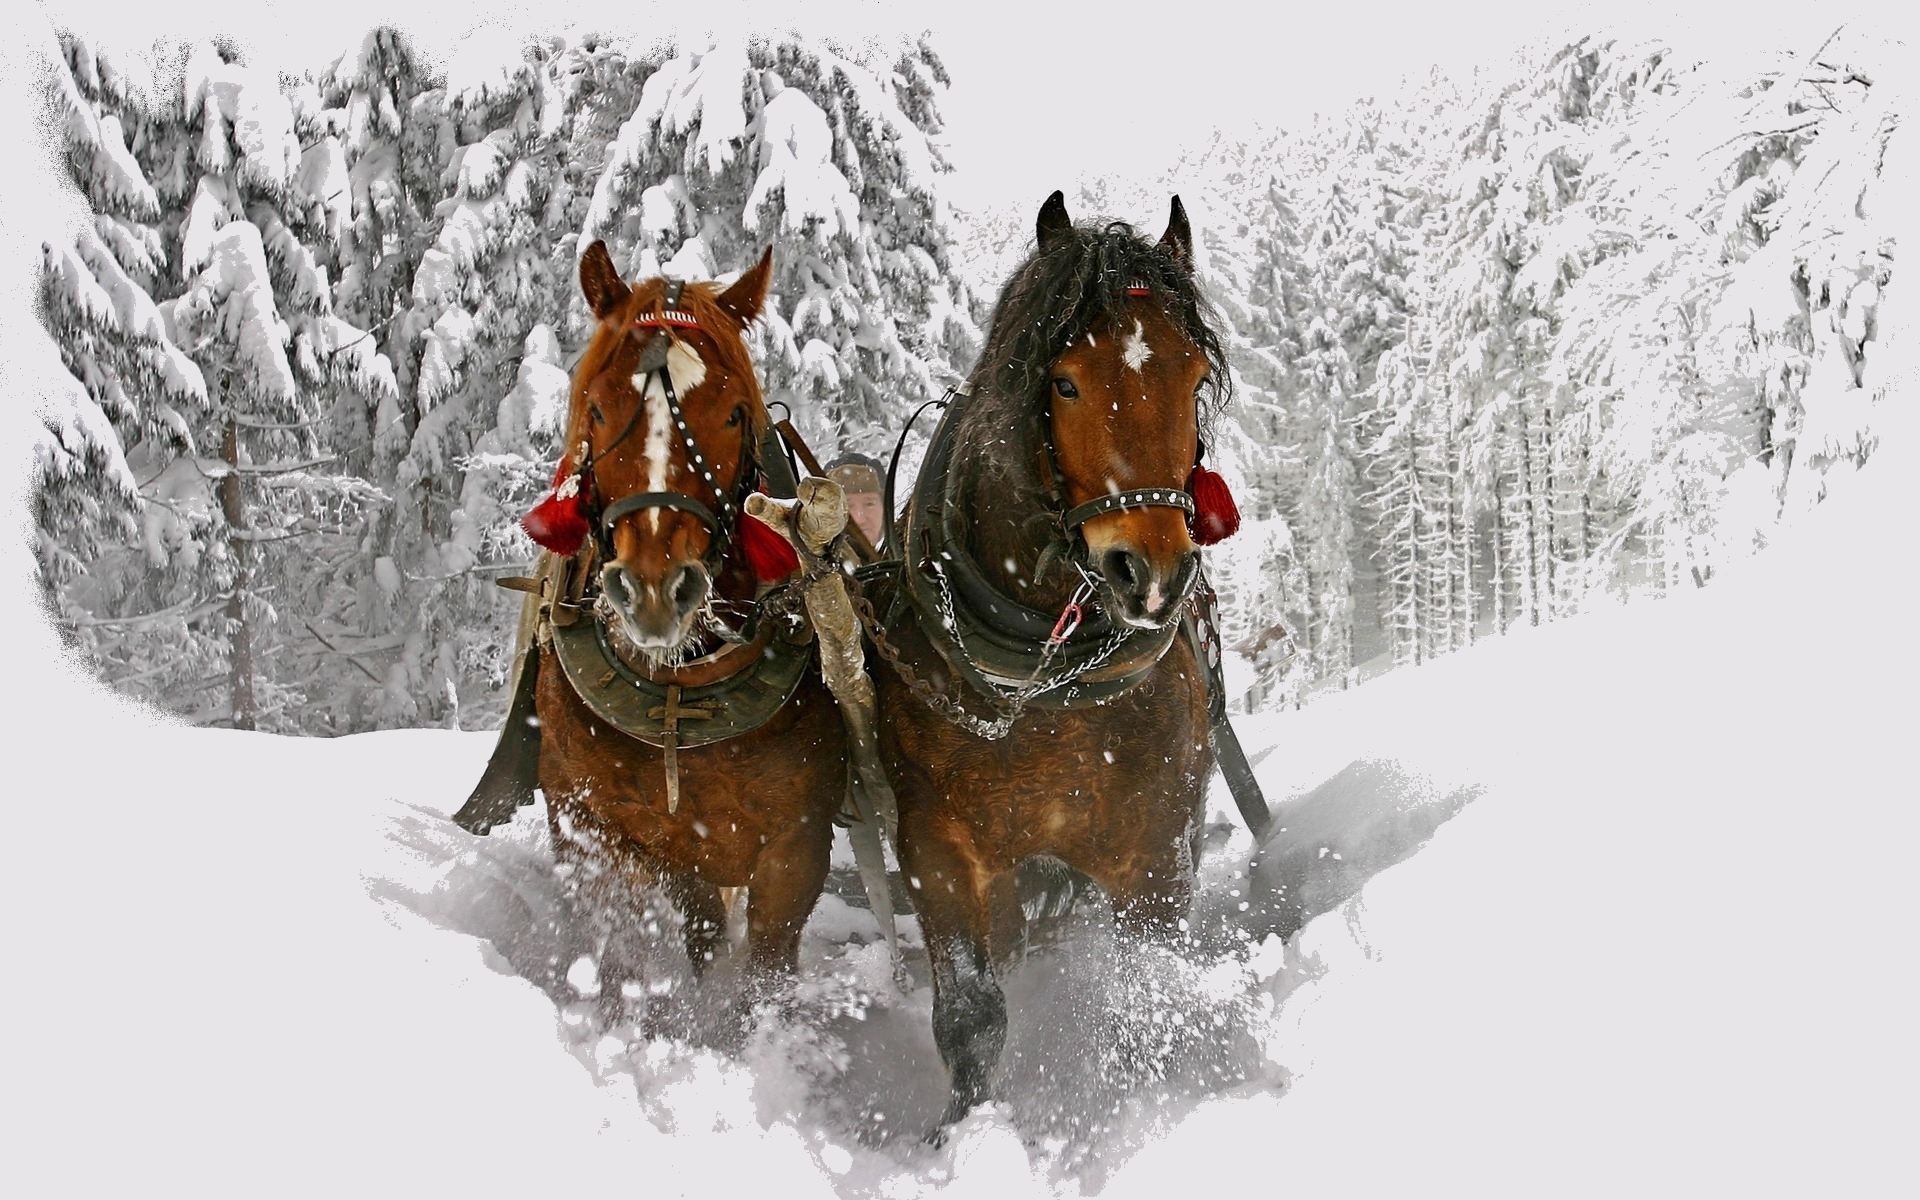 Скачать обои бесплатно Снег, Животные, Лошади, Зима картинка на рабочий стол ПК